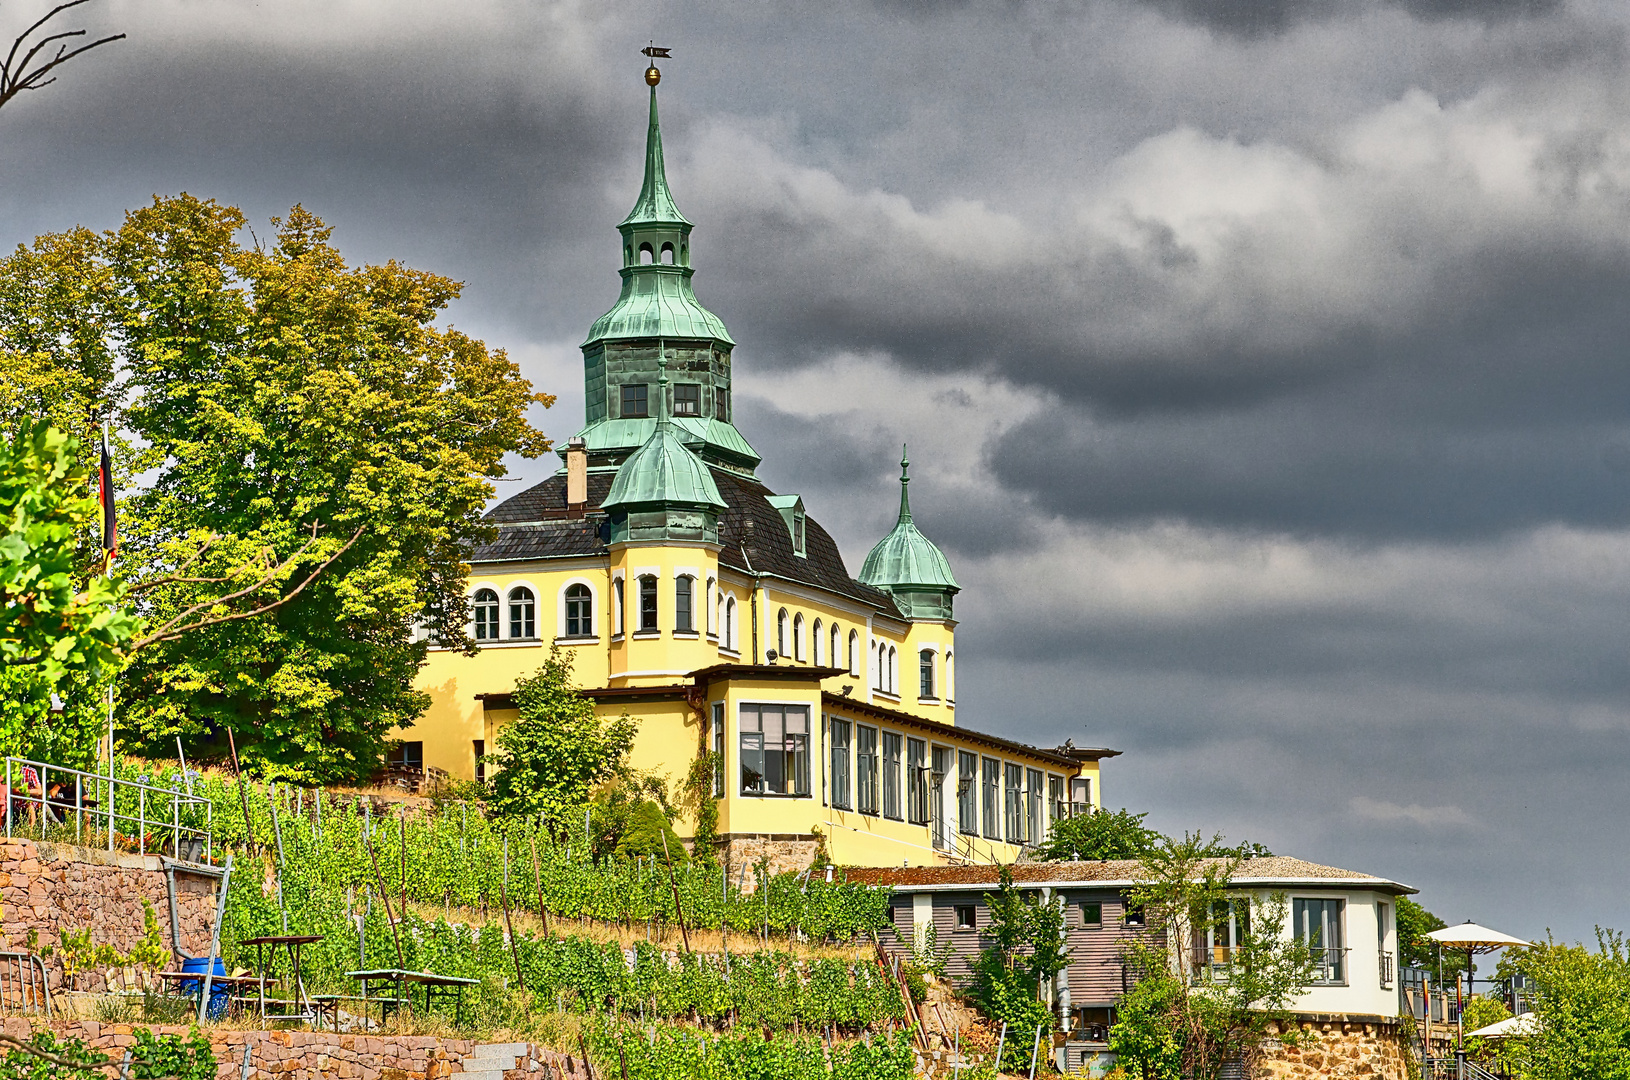 Das Spitzhaus in Radebeul